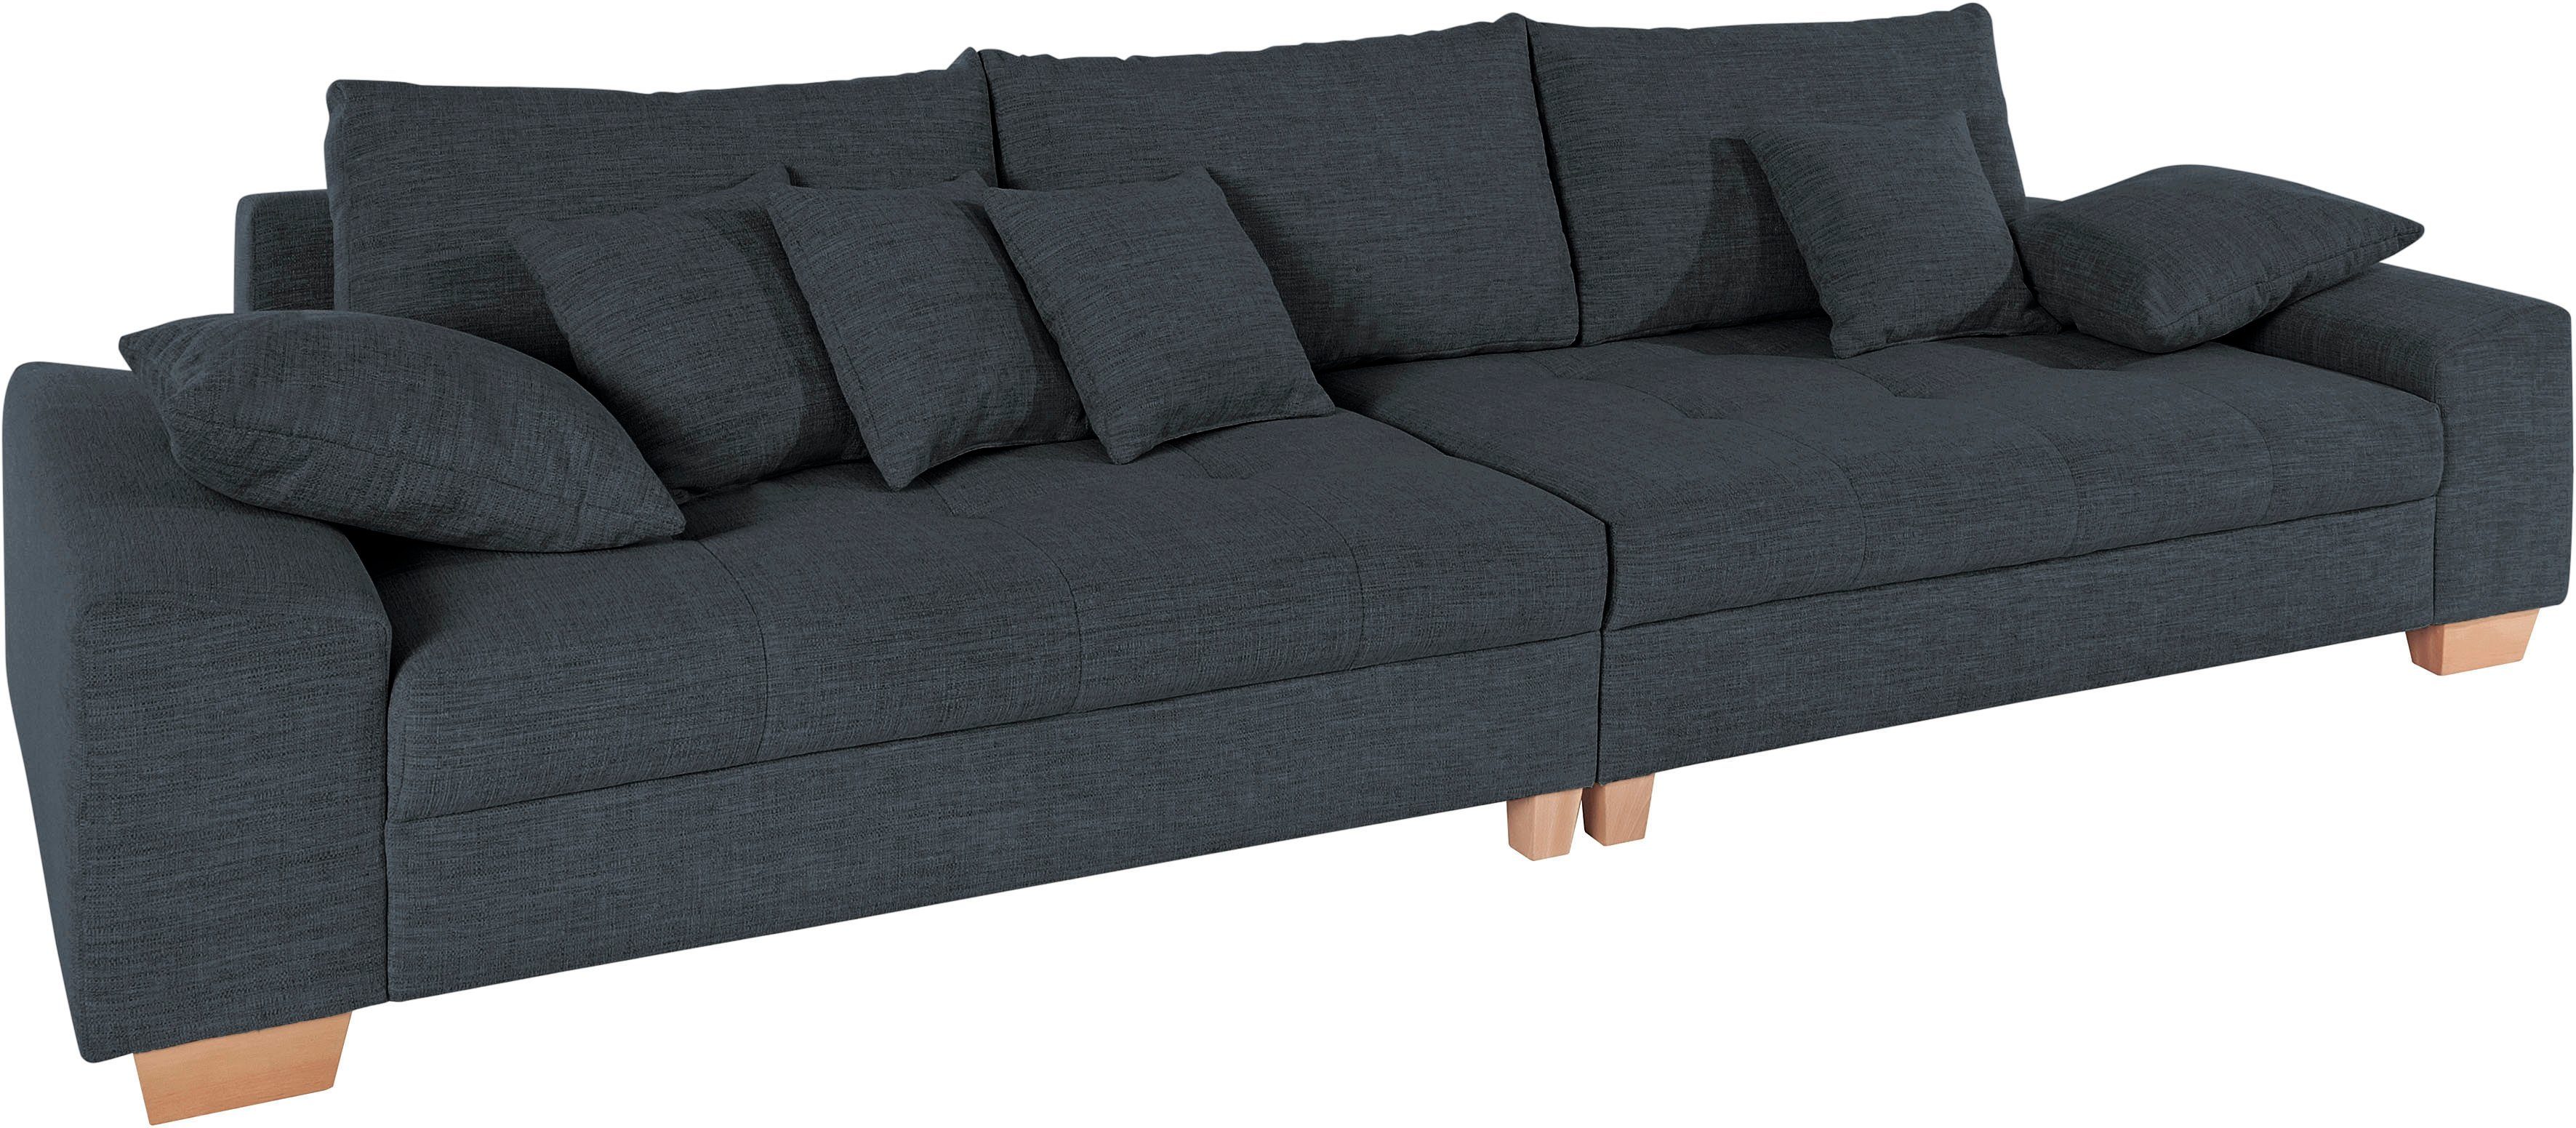 Mr. Couch Big-Sofa Nikita, wahlweise mit Kaltschaum (140kg Belastung/Sitz)  und AquaClean-Stoff | Ecksofas